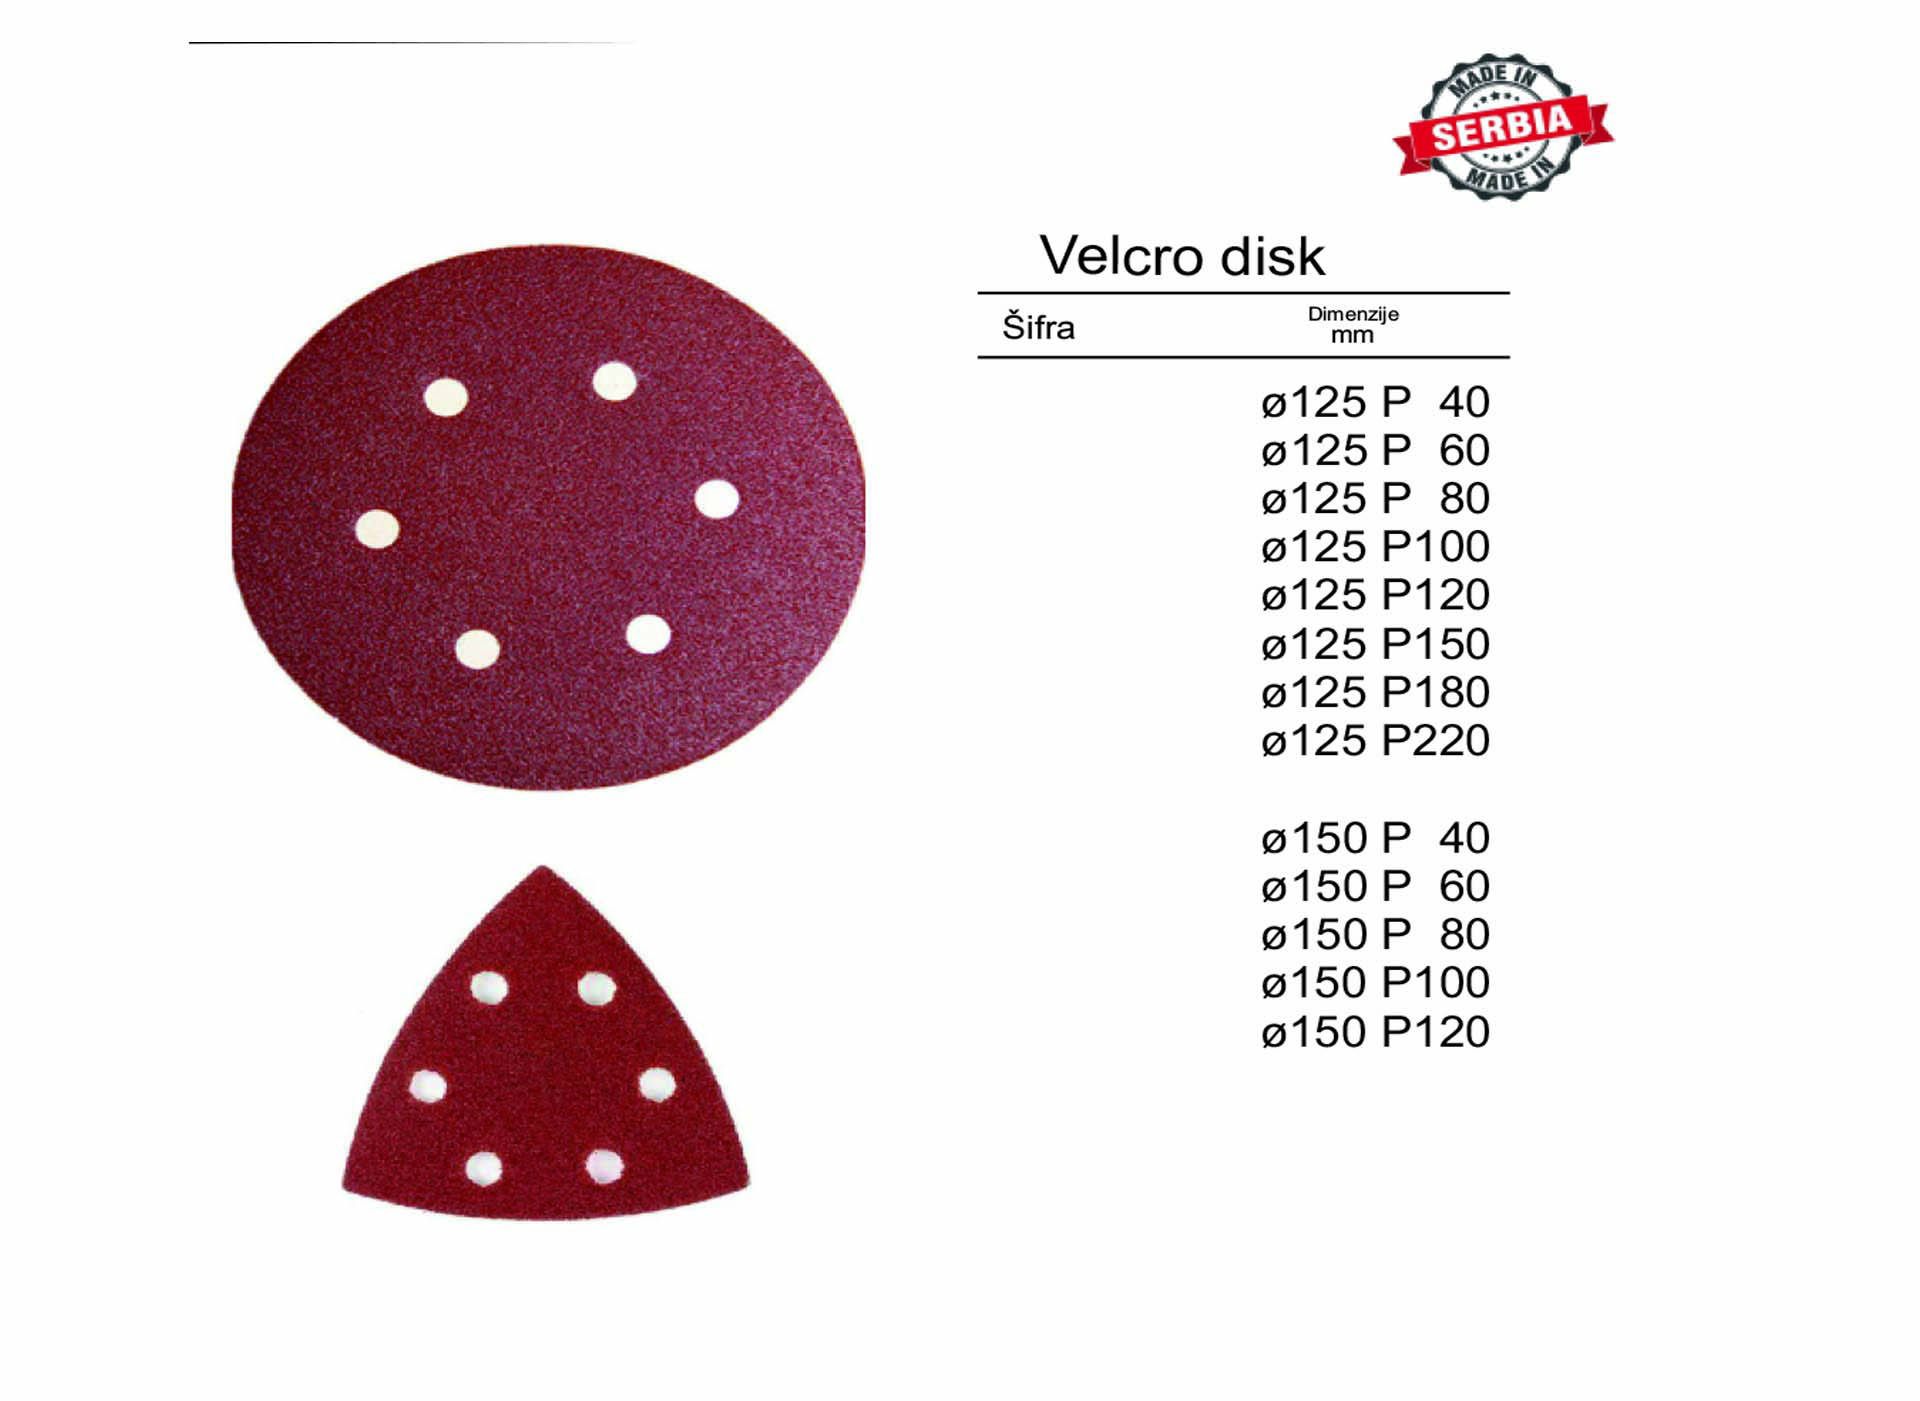 Velcro disk